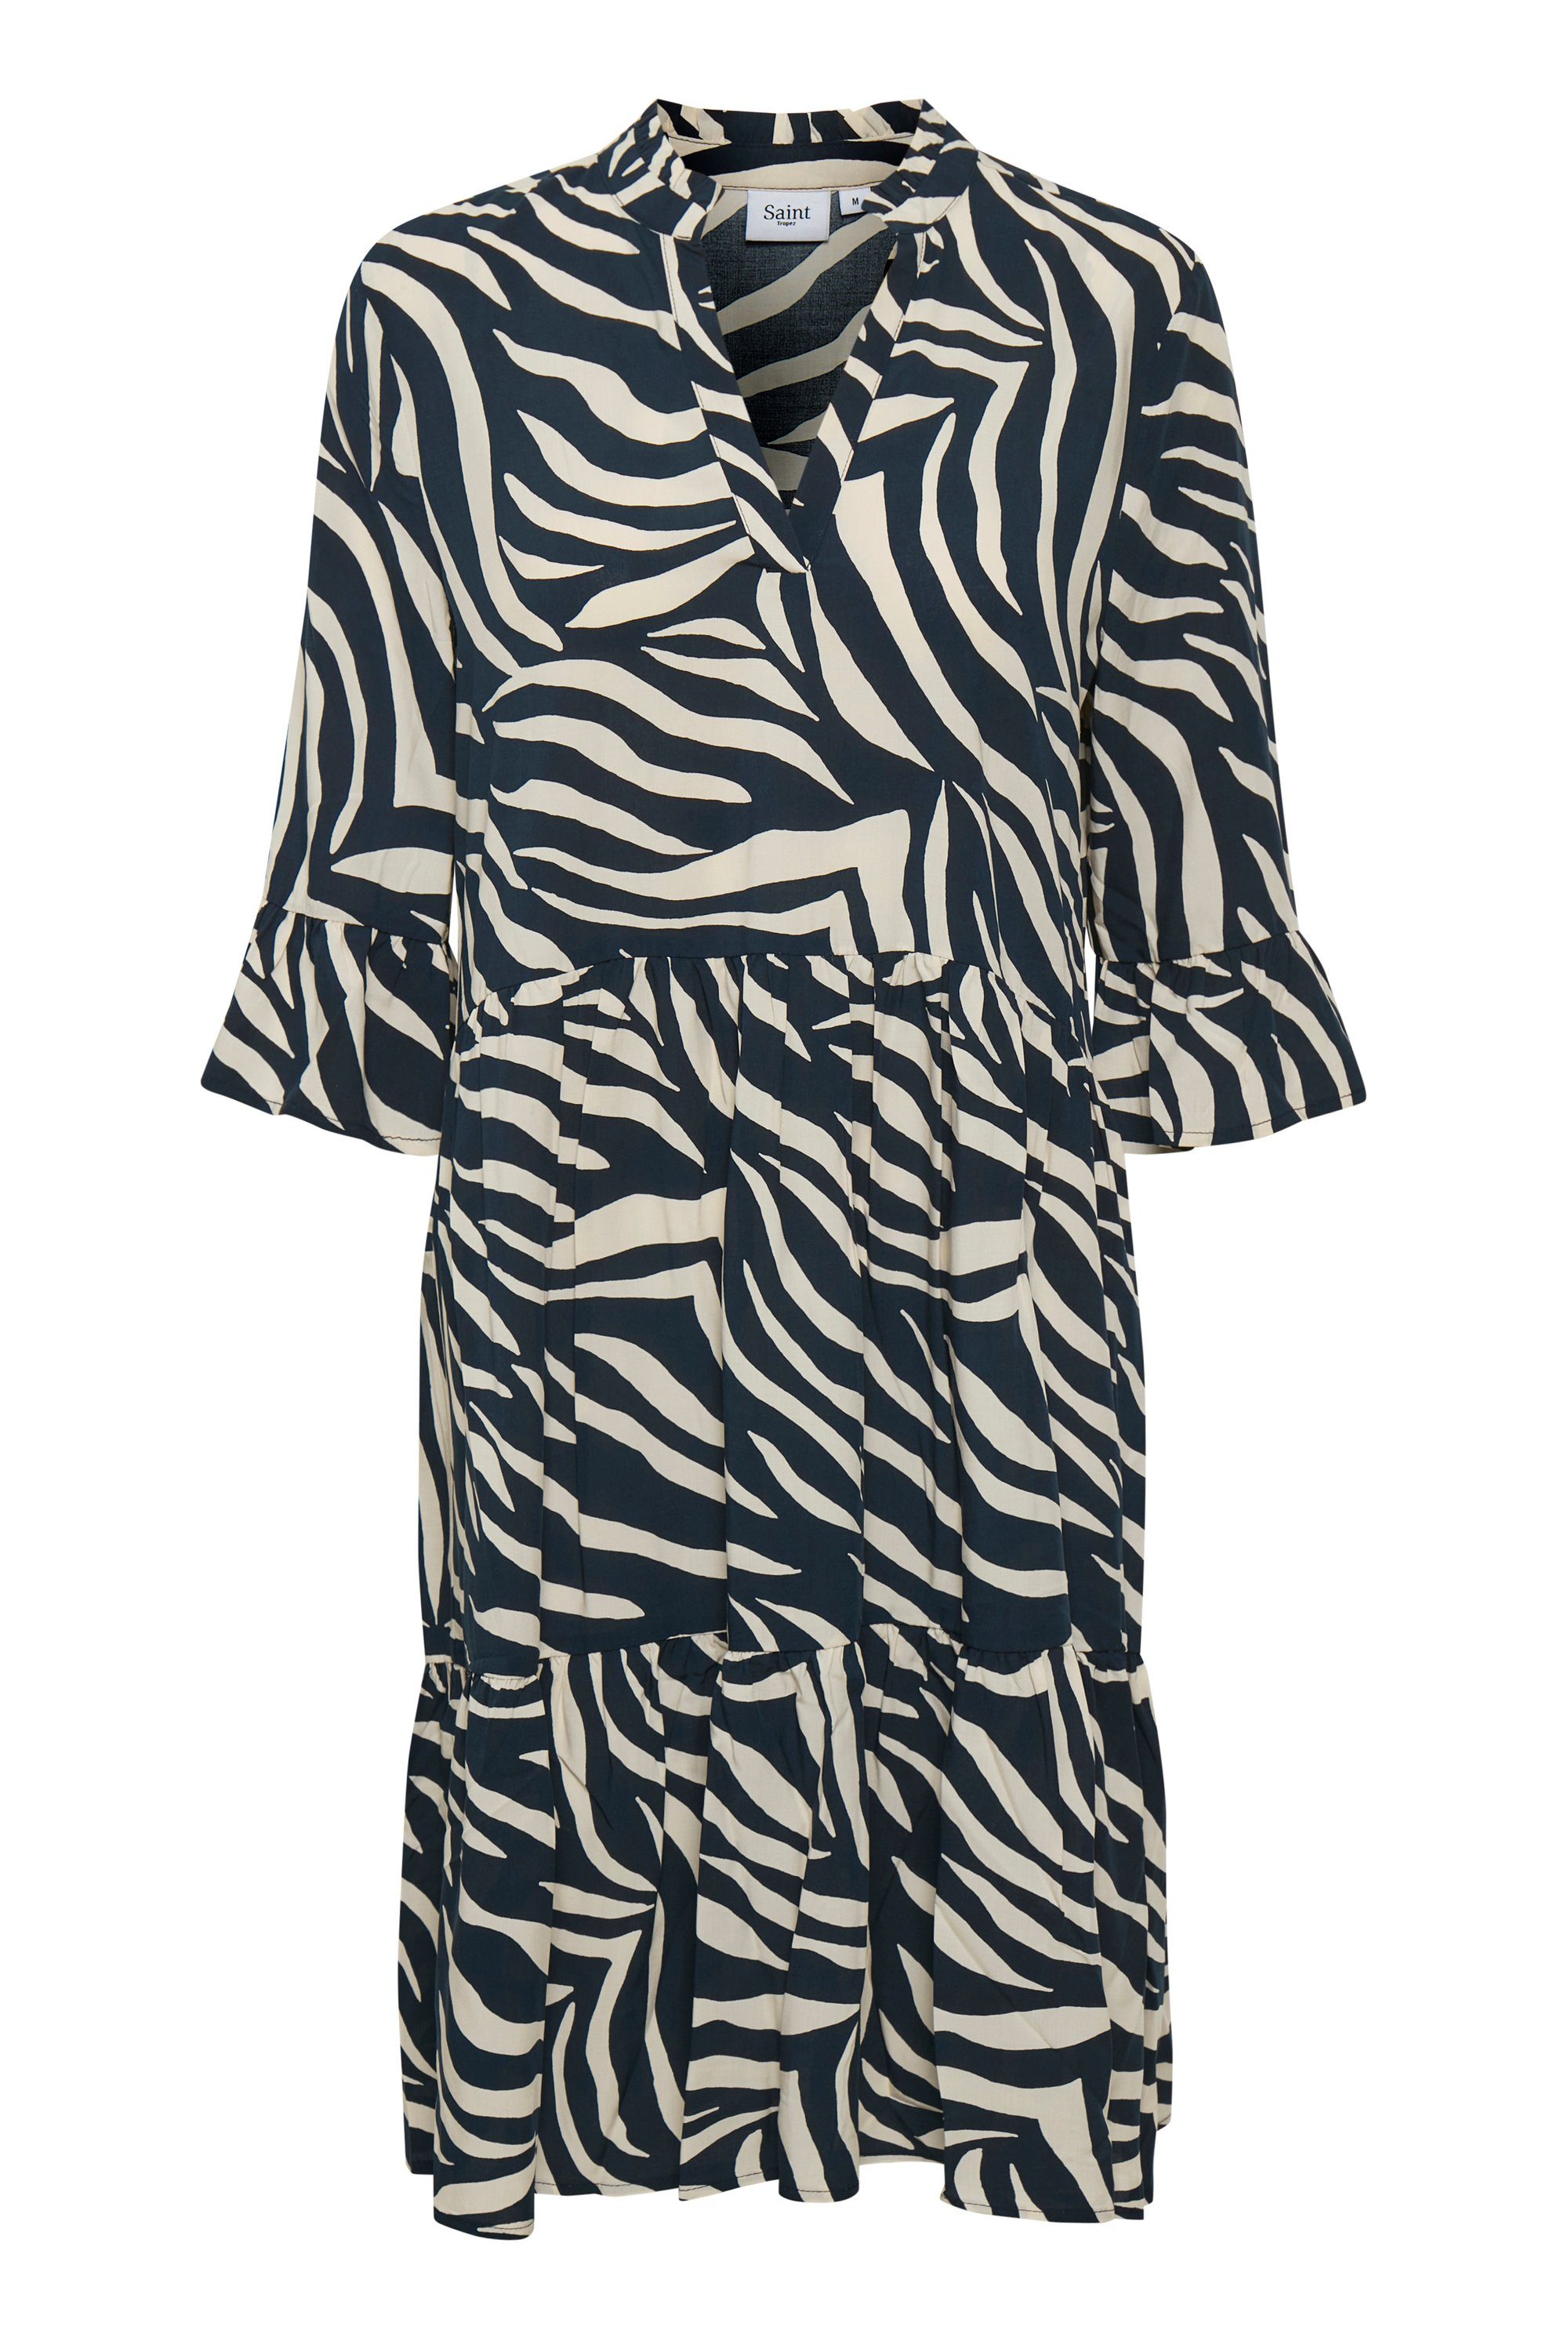 Saint Tropez Jerseykleid EdaSZ Eclipse Dress Total Zebra Skin